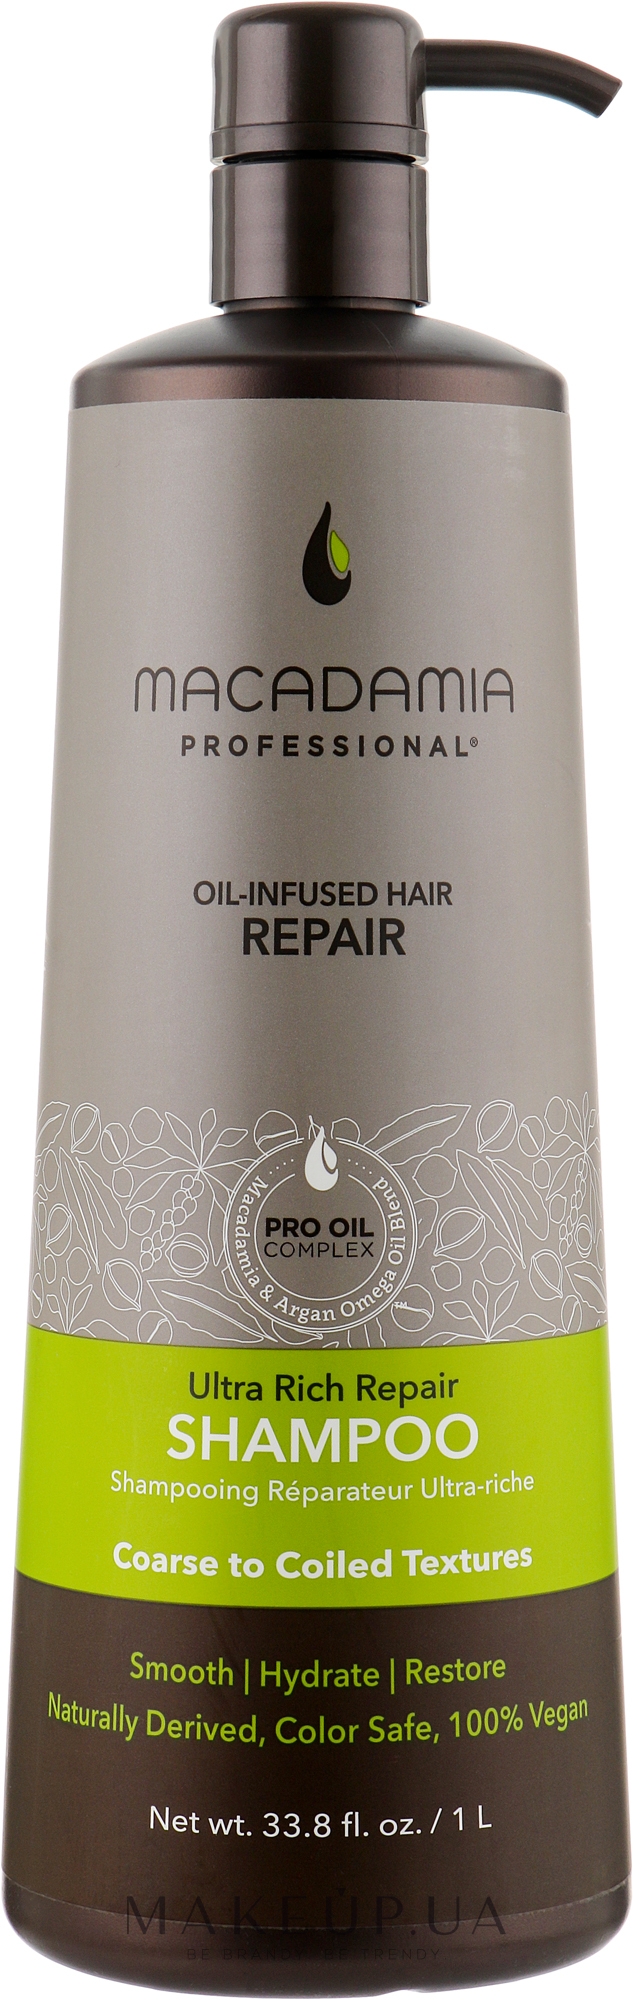 Восстанавливающий шампунь для очень густых волос - Macadamia Professional Ultra Rich Repair Shampoo — фото 1000ml